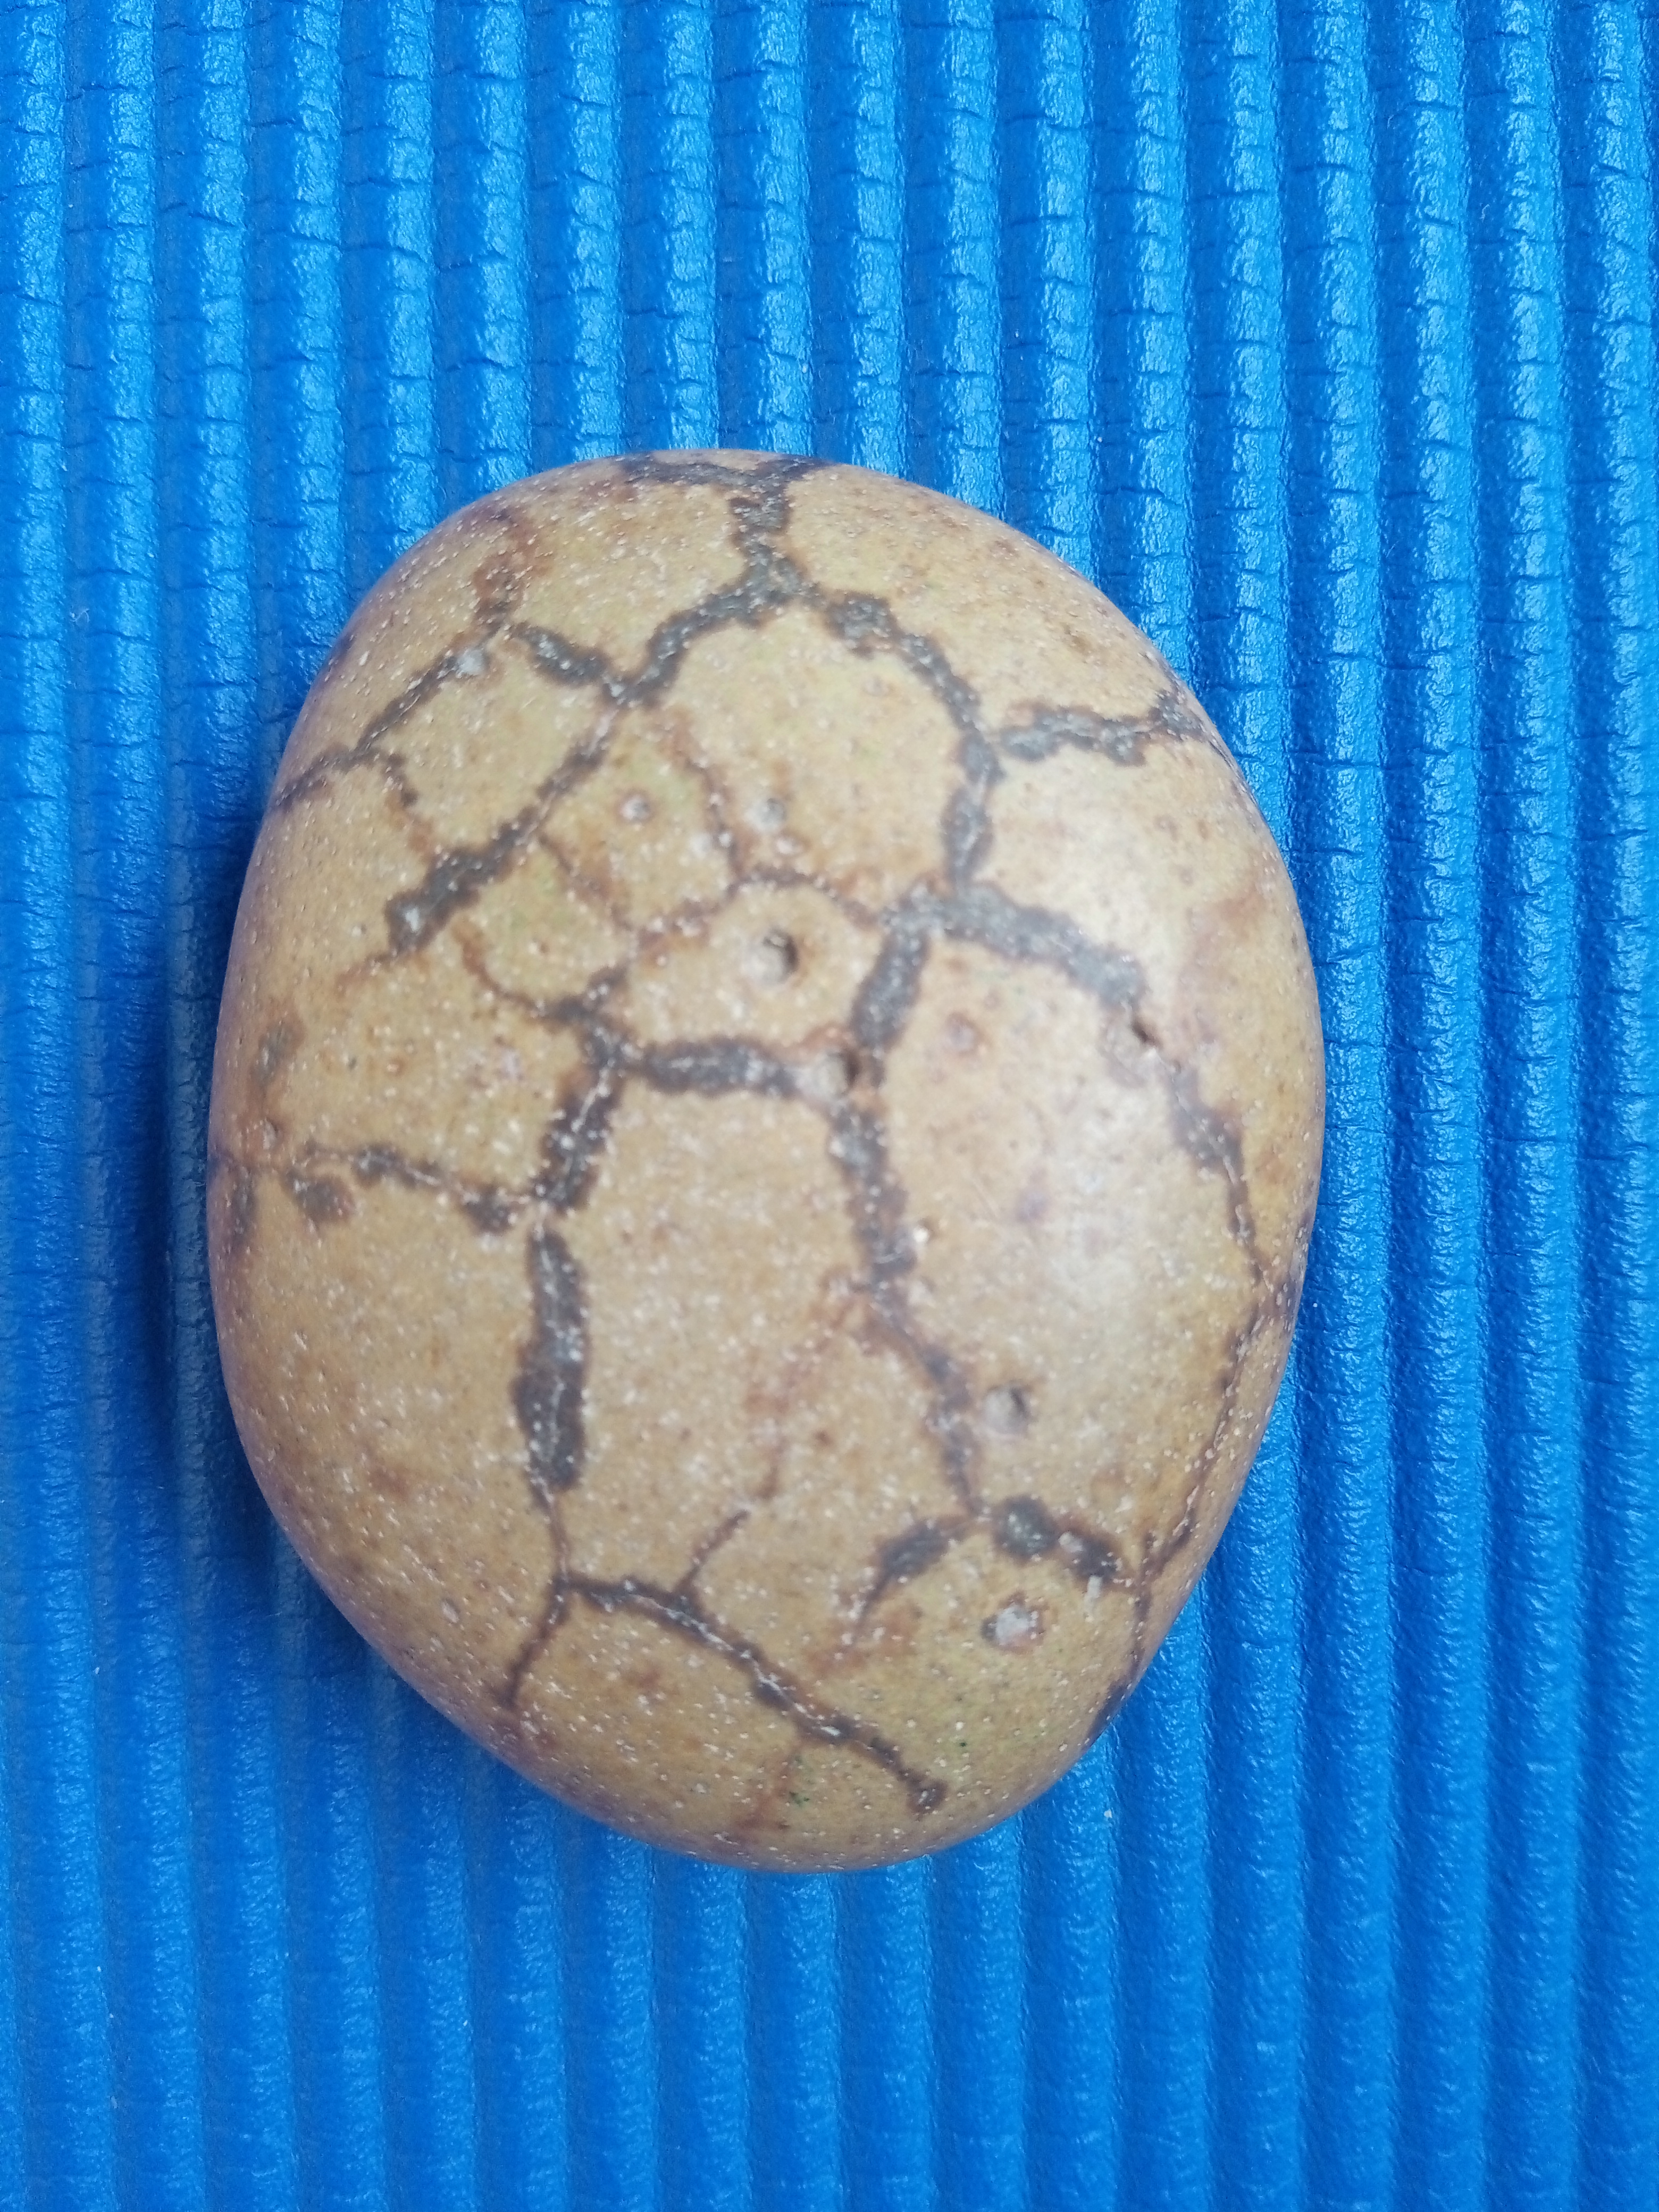 龟纹石